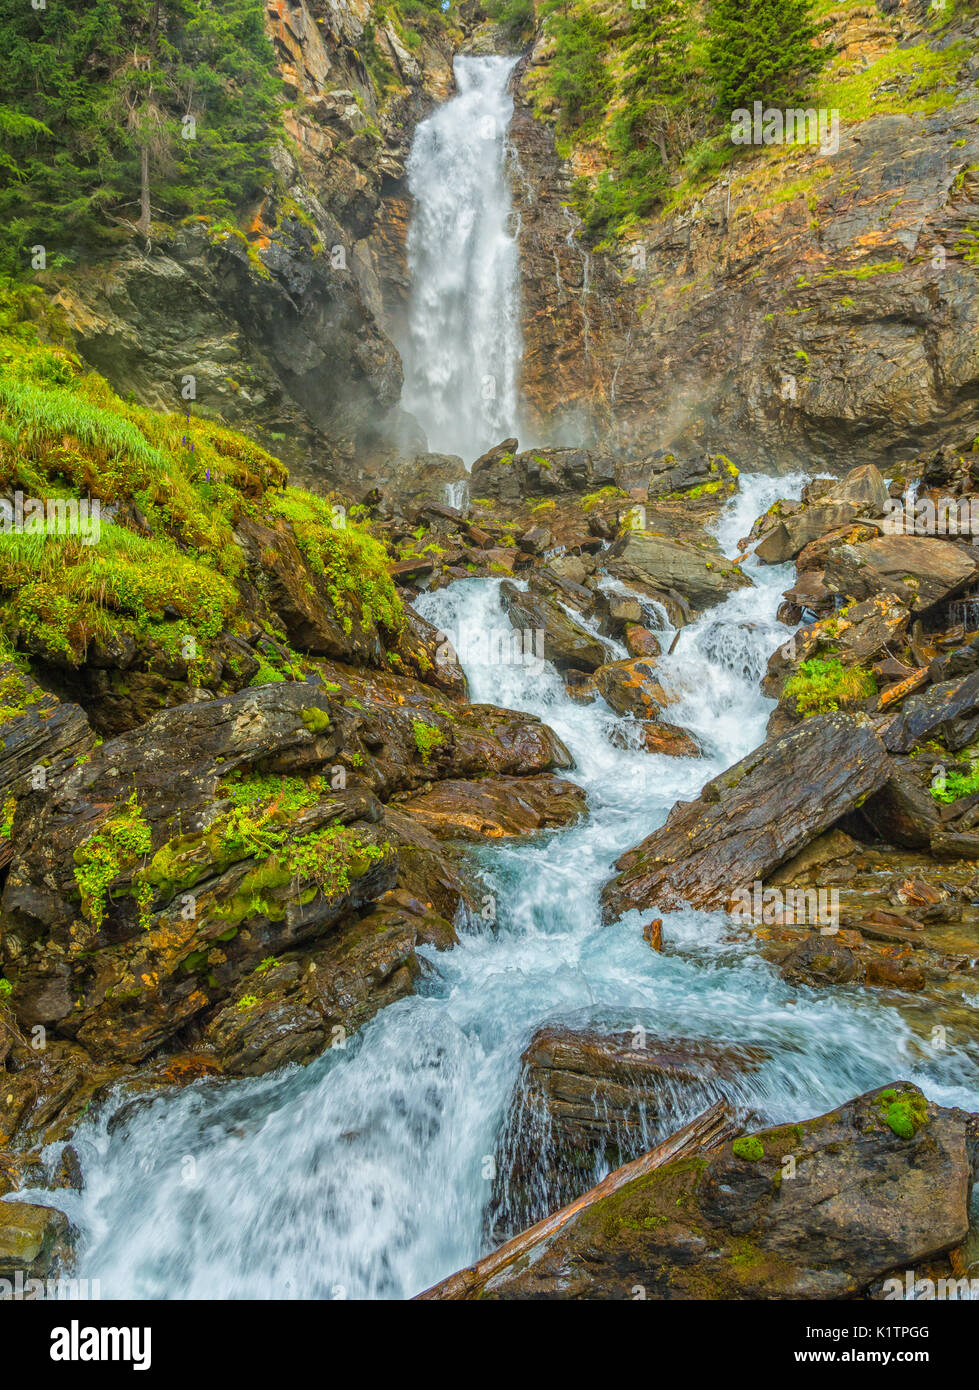 Die Wasserfälle von Saent sind eine der Perlen des Rabbiner-Tals im Trentino-Südtirol, Provinz Trient, Norditalien Stockfoto